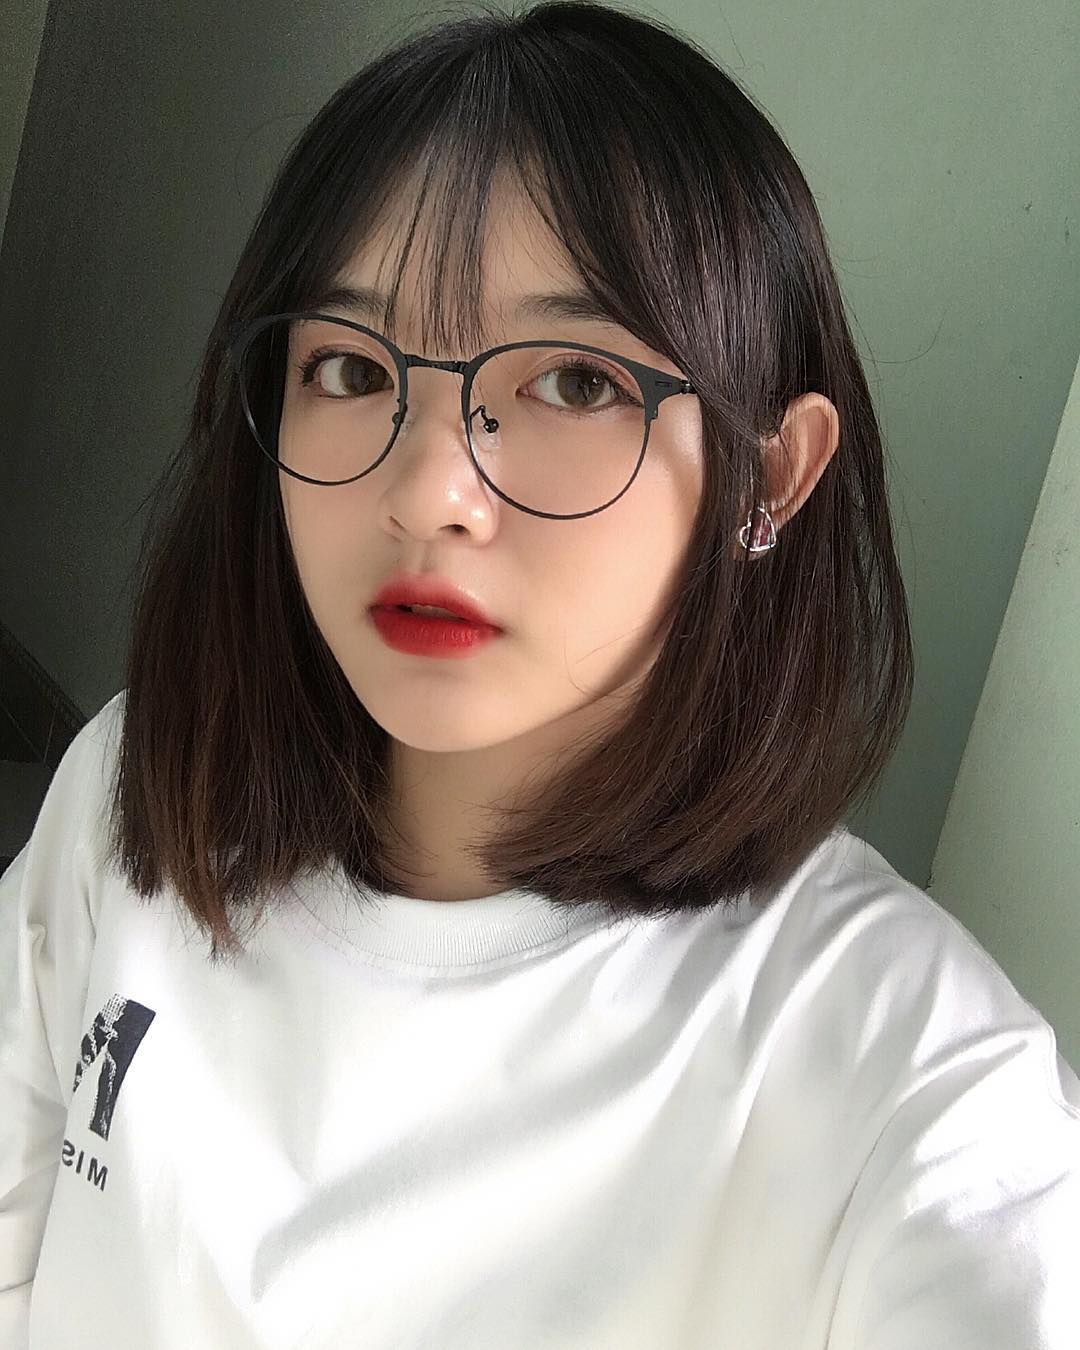 Hình gái đẹp tóc ngắn 17 tuổi Phạm Thùy Châu cute tựa thiên thần